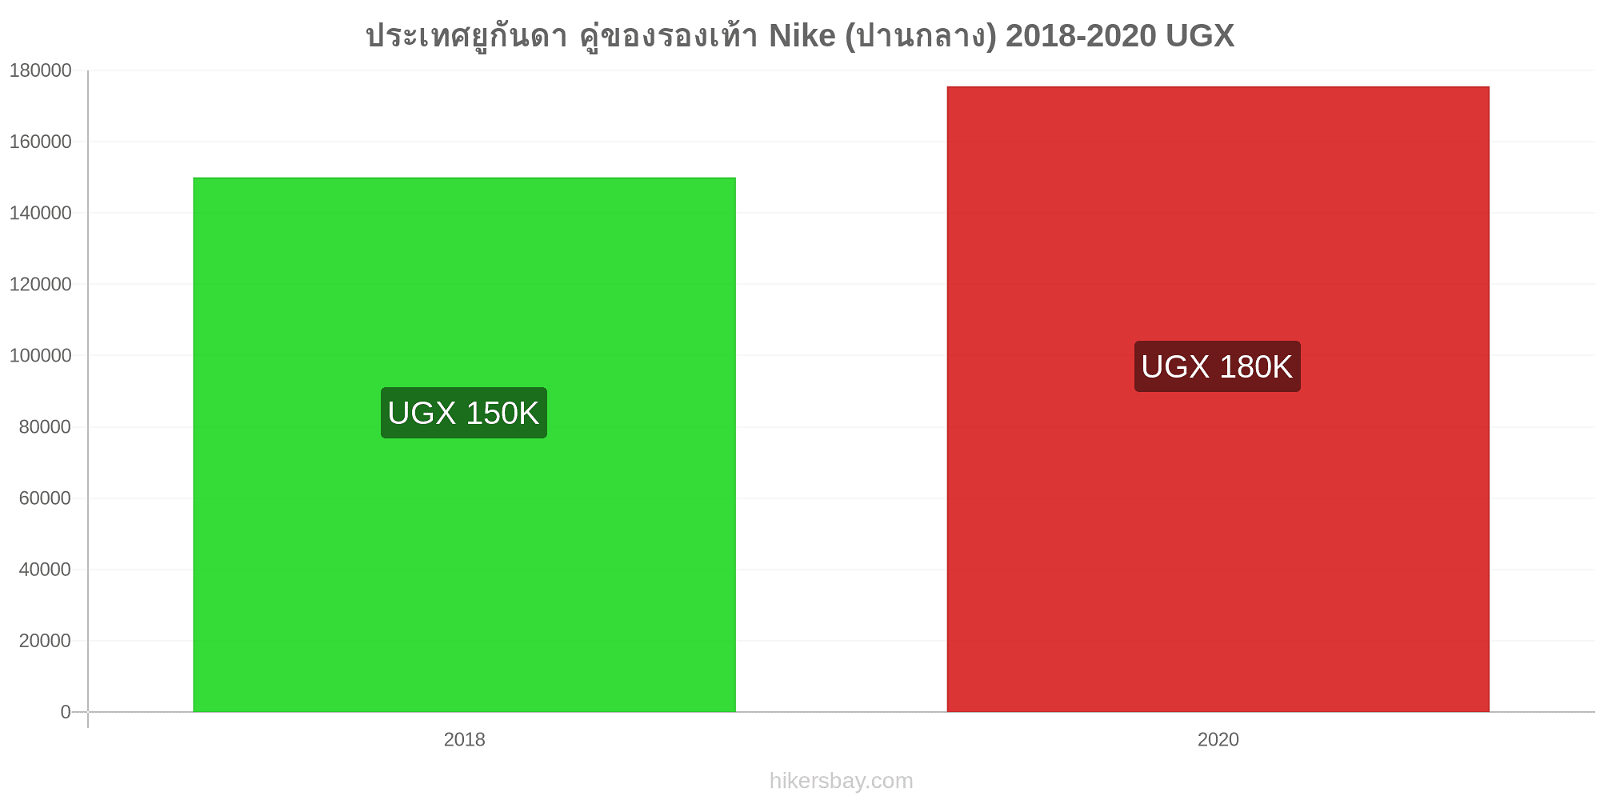 ประเทศยูกันดา การเปลี่ยนแปลงราคา คู่ของรองเท้า Nike (ปานกลาง) hikersbay.com